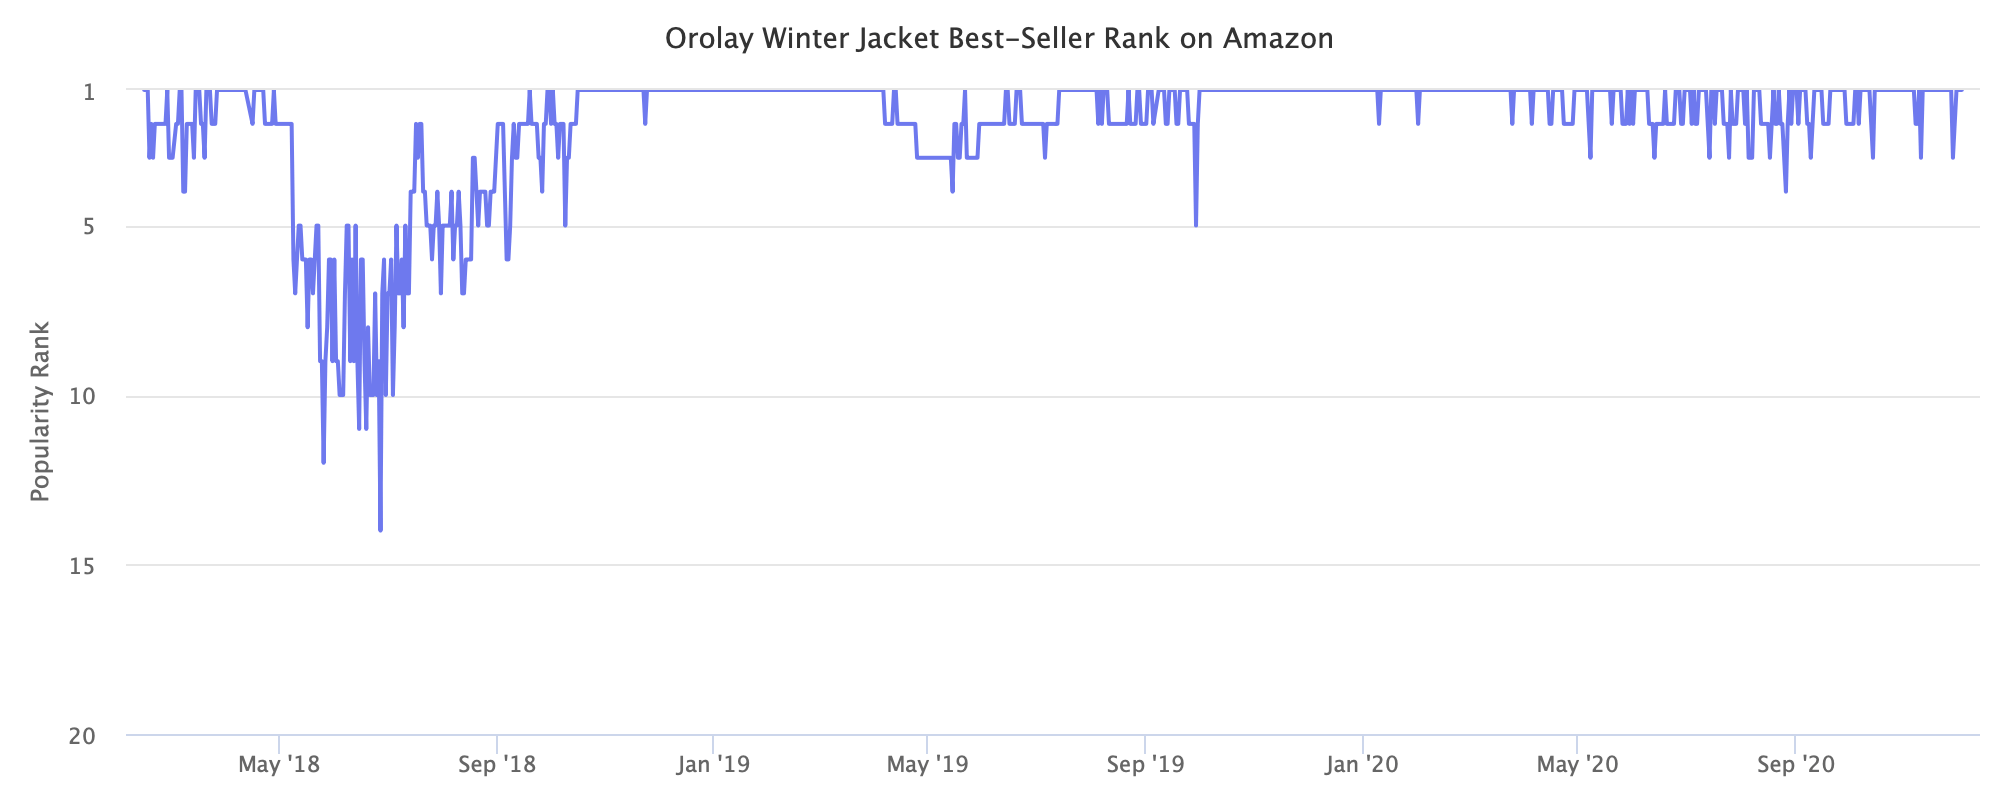 Orolay Winter Jacket Best-Seller Rank on Amazon